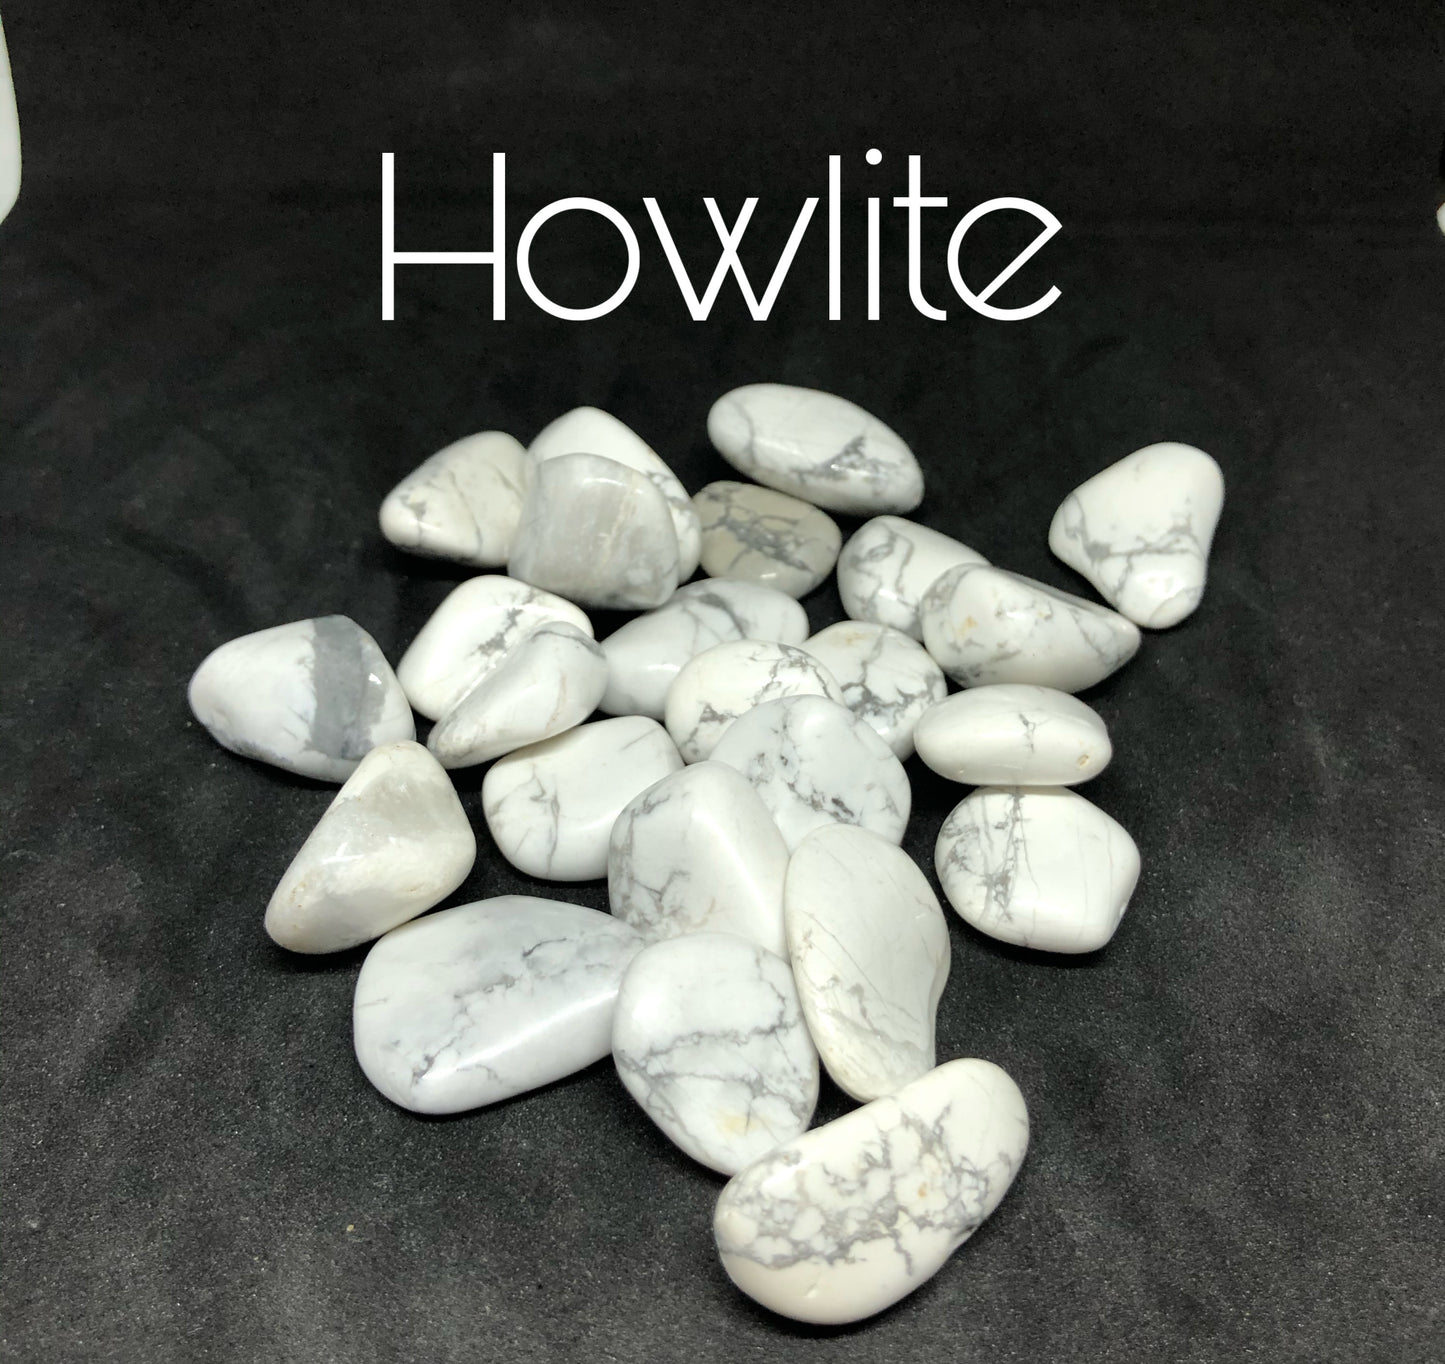 Howlite stones